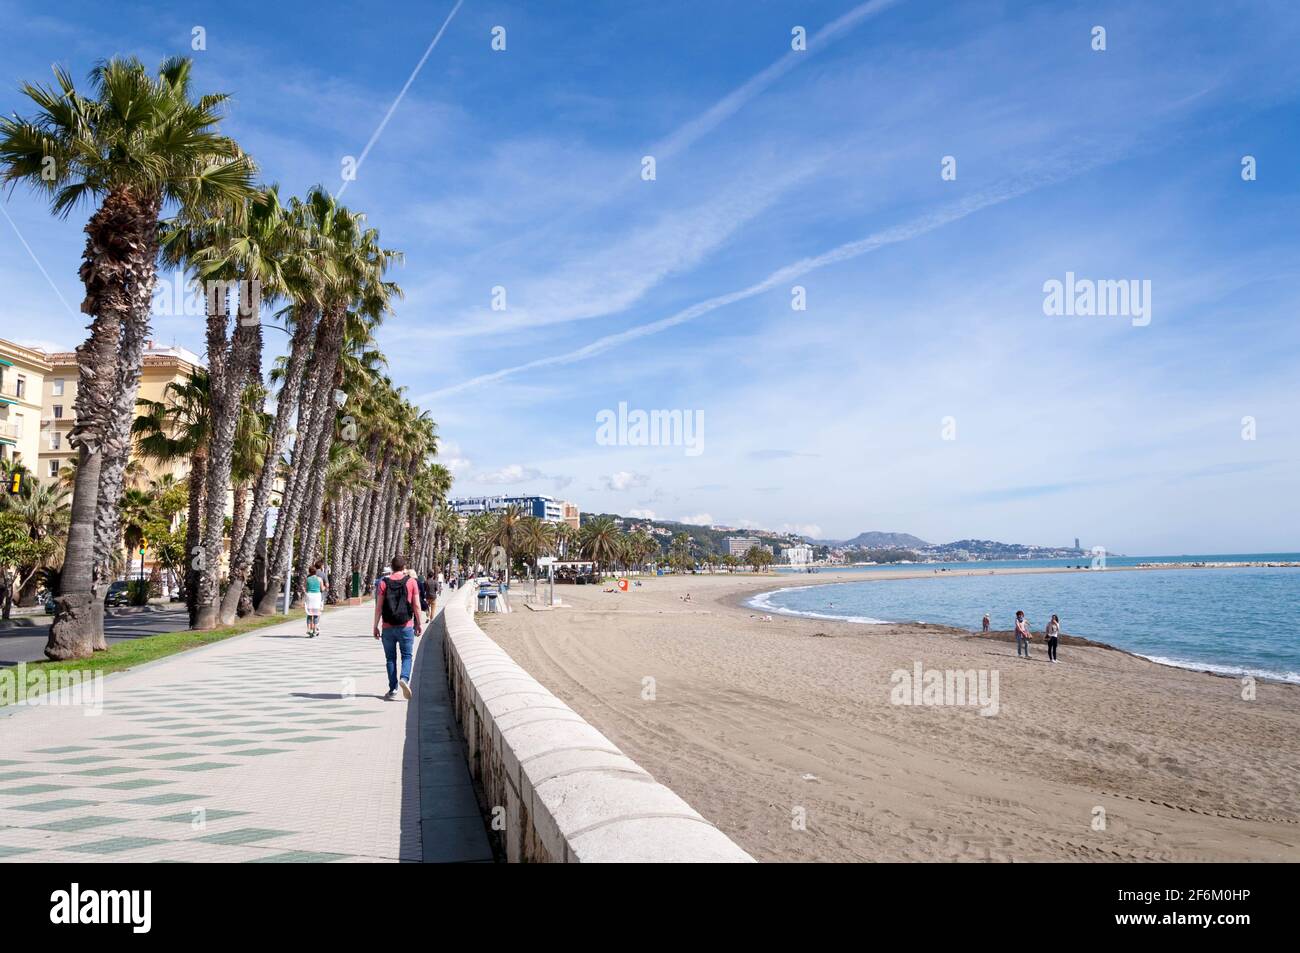 Palmen, blauer Himmel und viel Sonnenschein in Malaga, Spanien Stockfoto